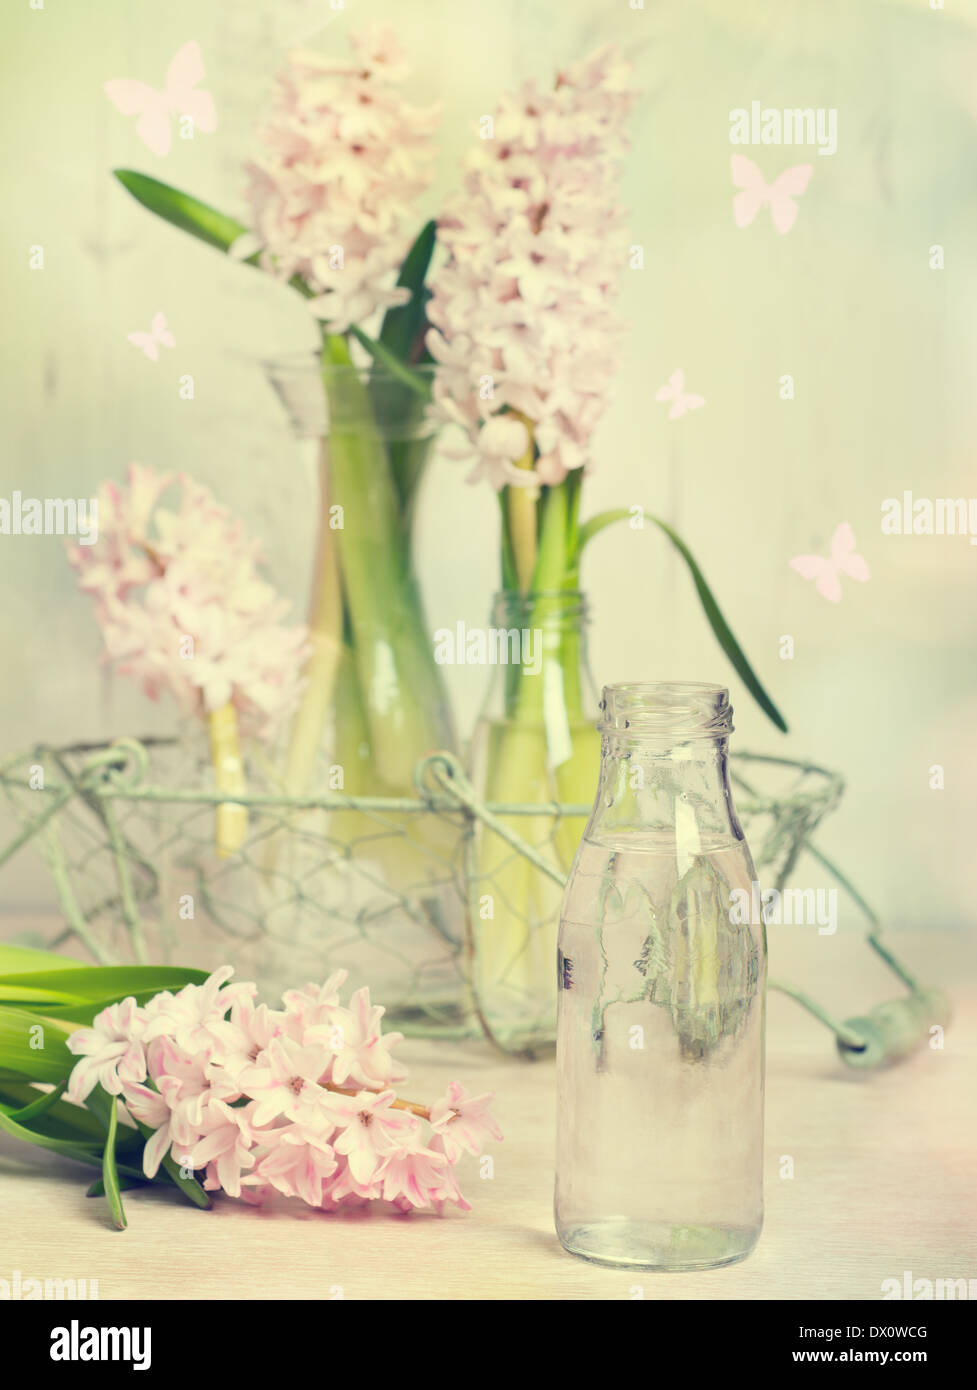 Les jacinthes au printemps avec un accent sur le flacon en verre rempli d'eau prêt à prendre les fleurs - Vintage effet ajouté Banque D'Images